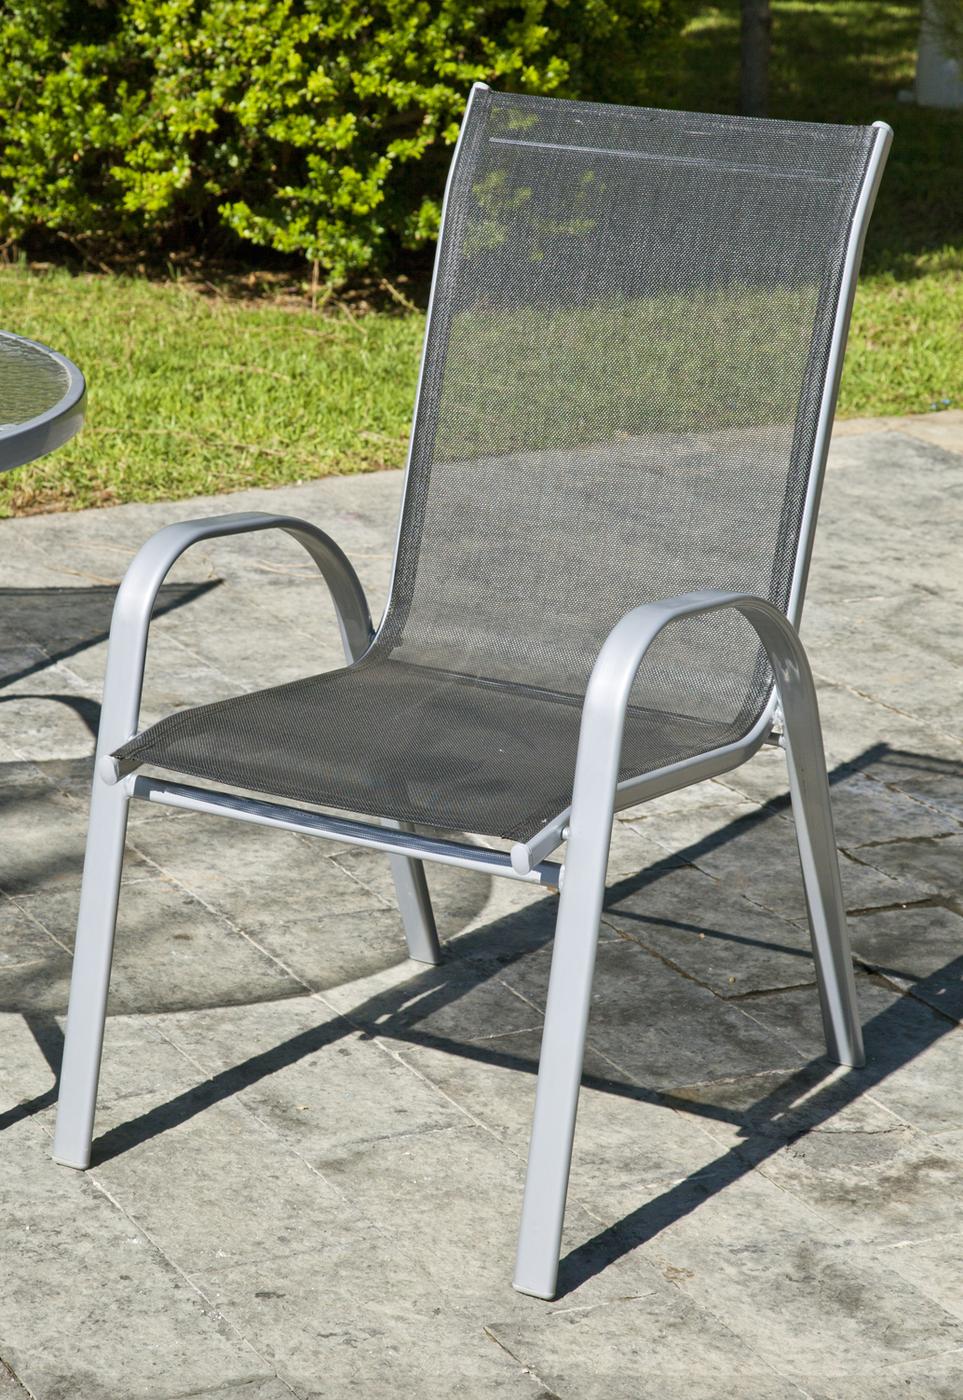 Conjunto Acero Seul 90-4 - Conjunto de acero color plata: mesa redonda de 90 cm. Con tablero de cristal templado + 4 sillones apilables de acero y textilen